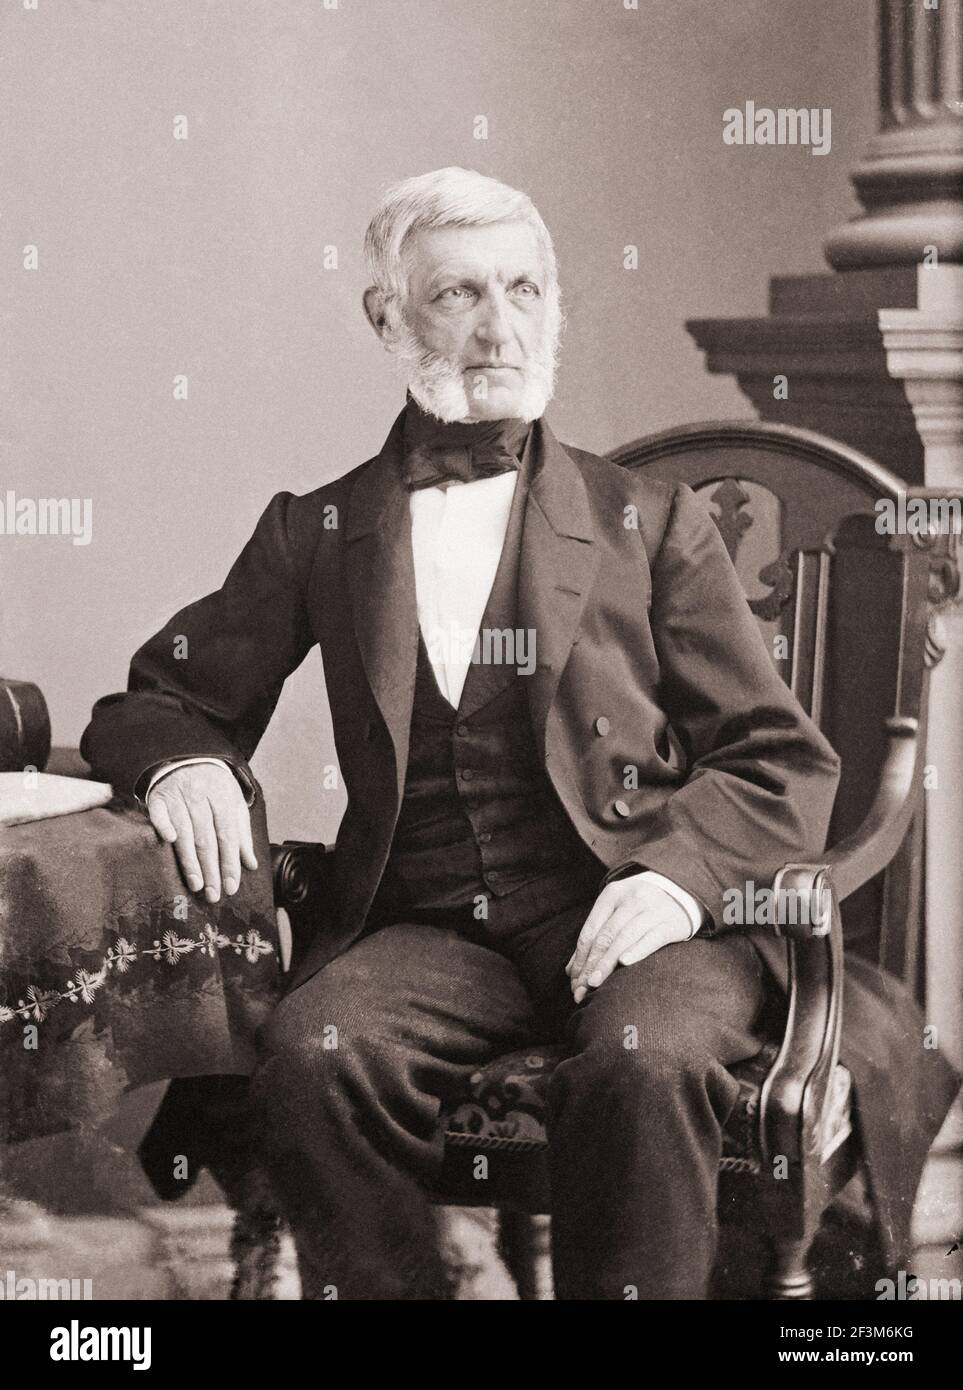 Archivfoto von George Bancroft. George Bancroft (1800 – 1891) war ein amerikanischer Historiker und Staatsmann, der in der Förderung der sekundären educ prominent war Stockfoto